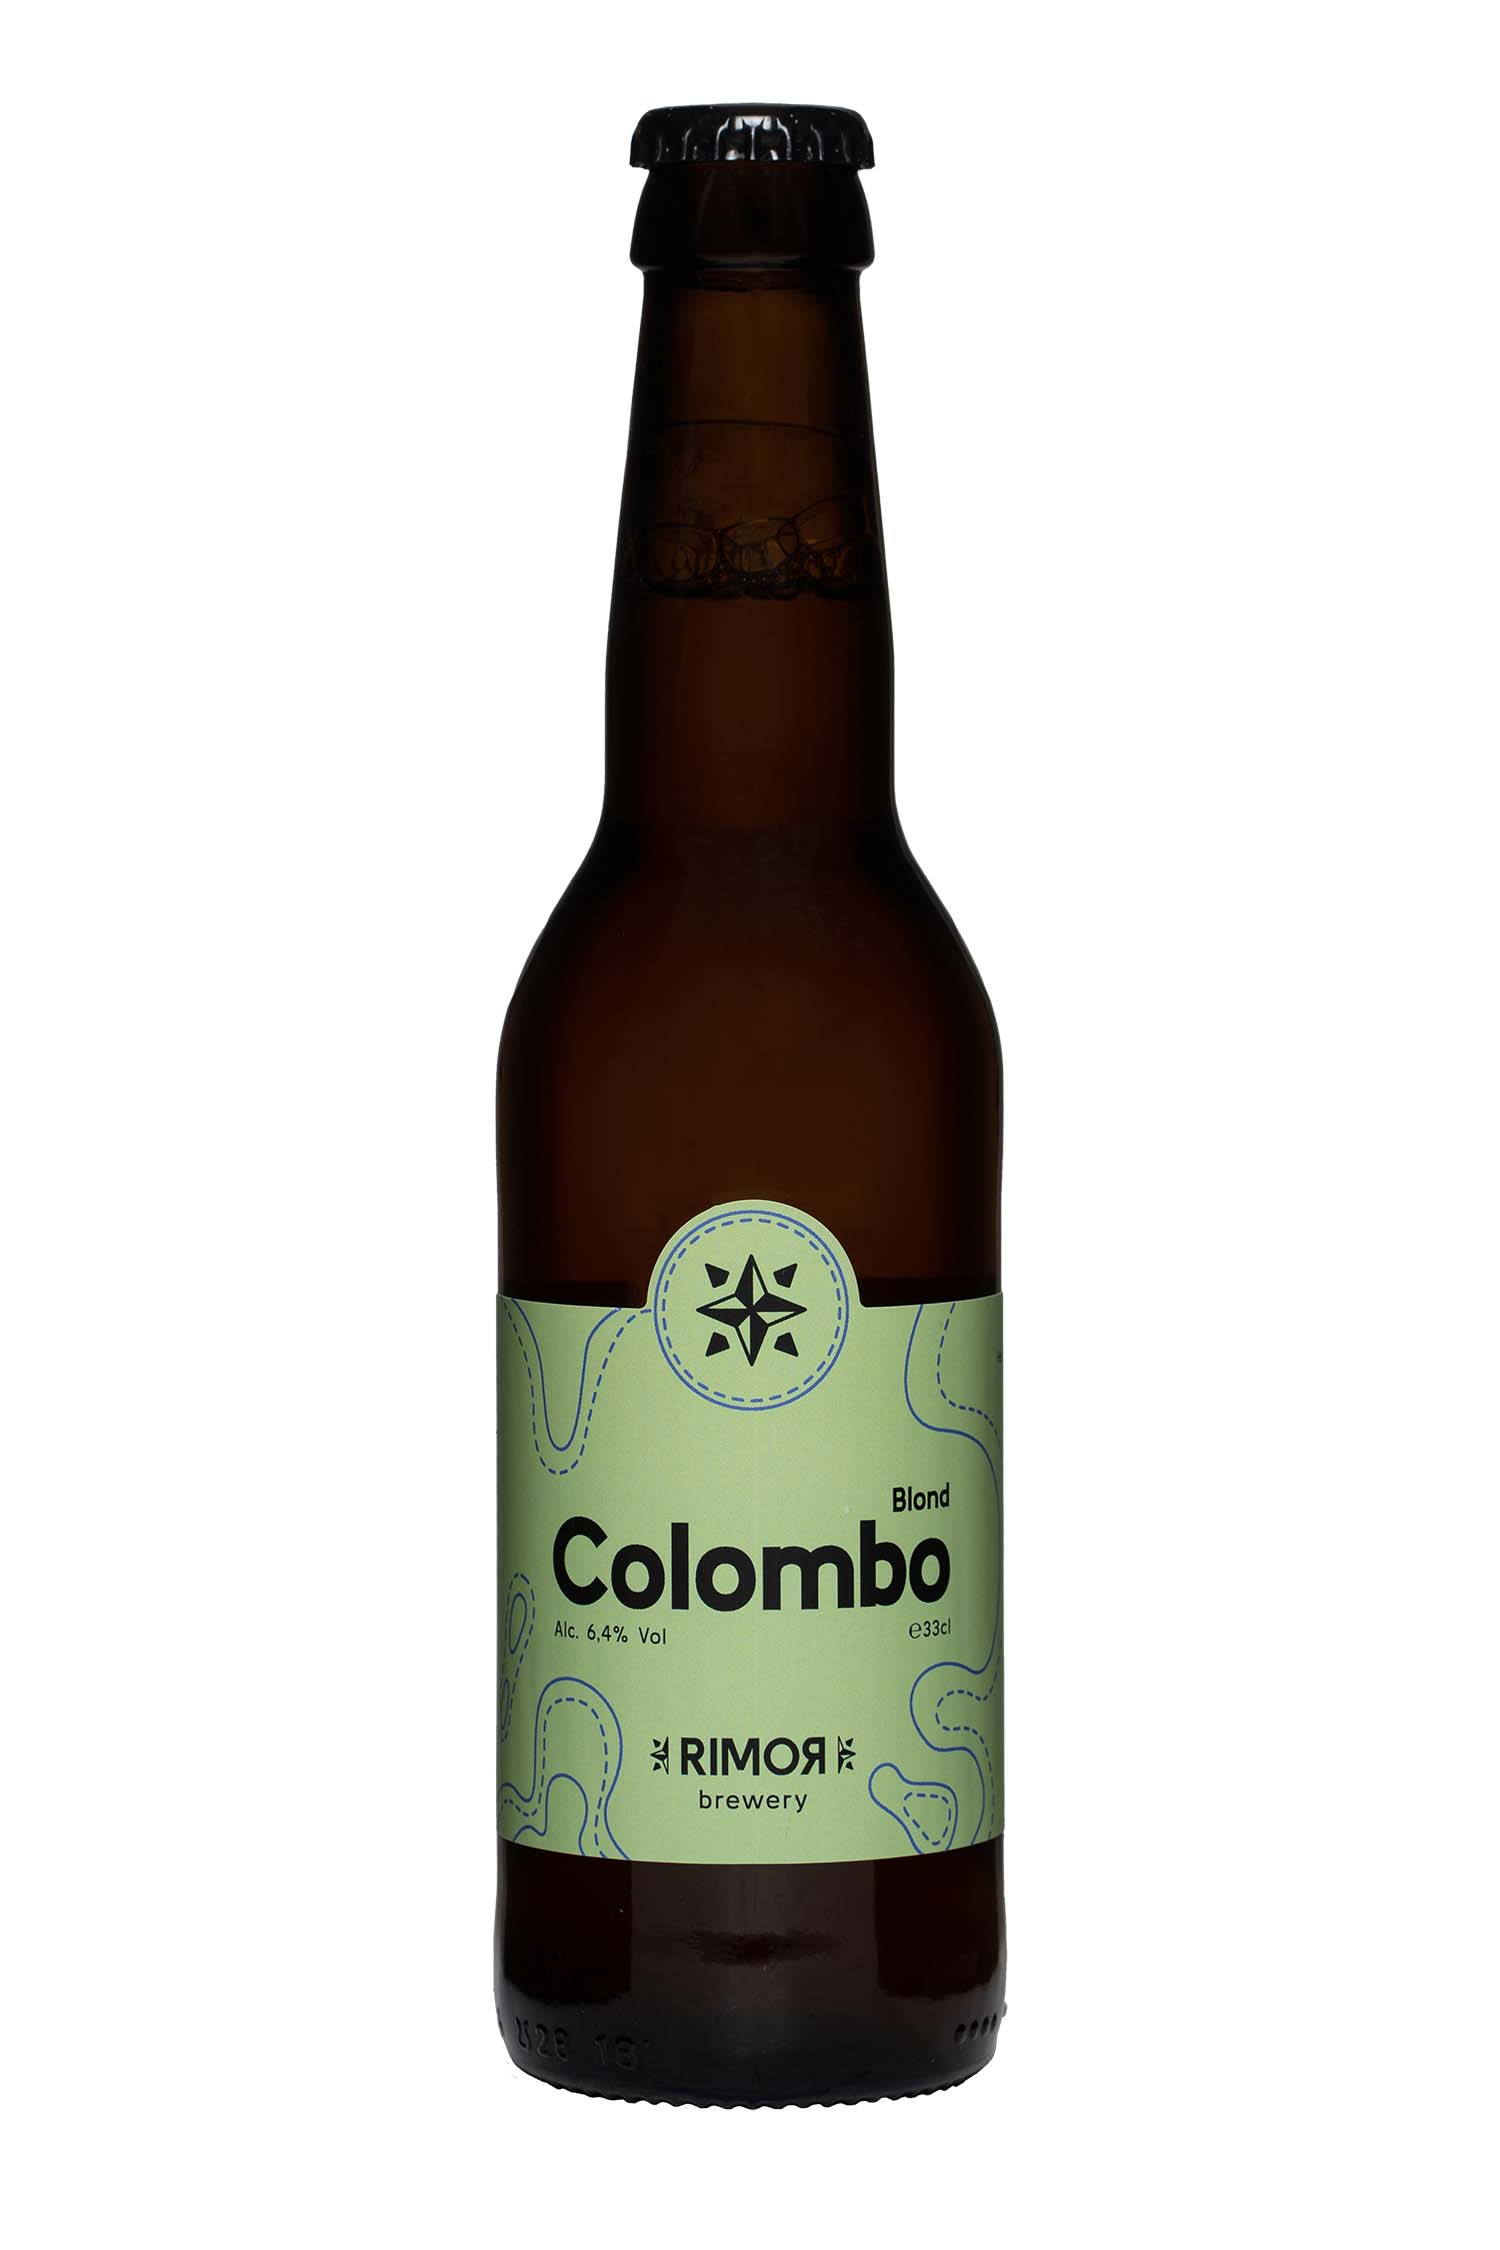 Colombo Blond - Brasserie Rimor